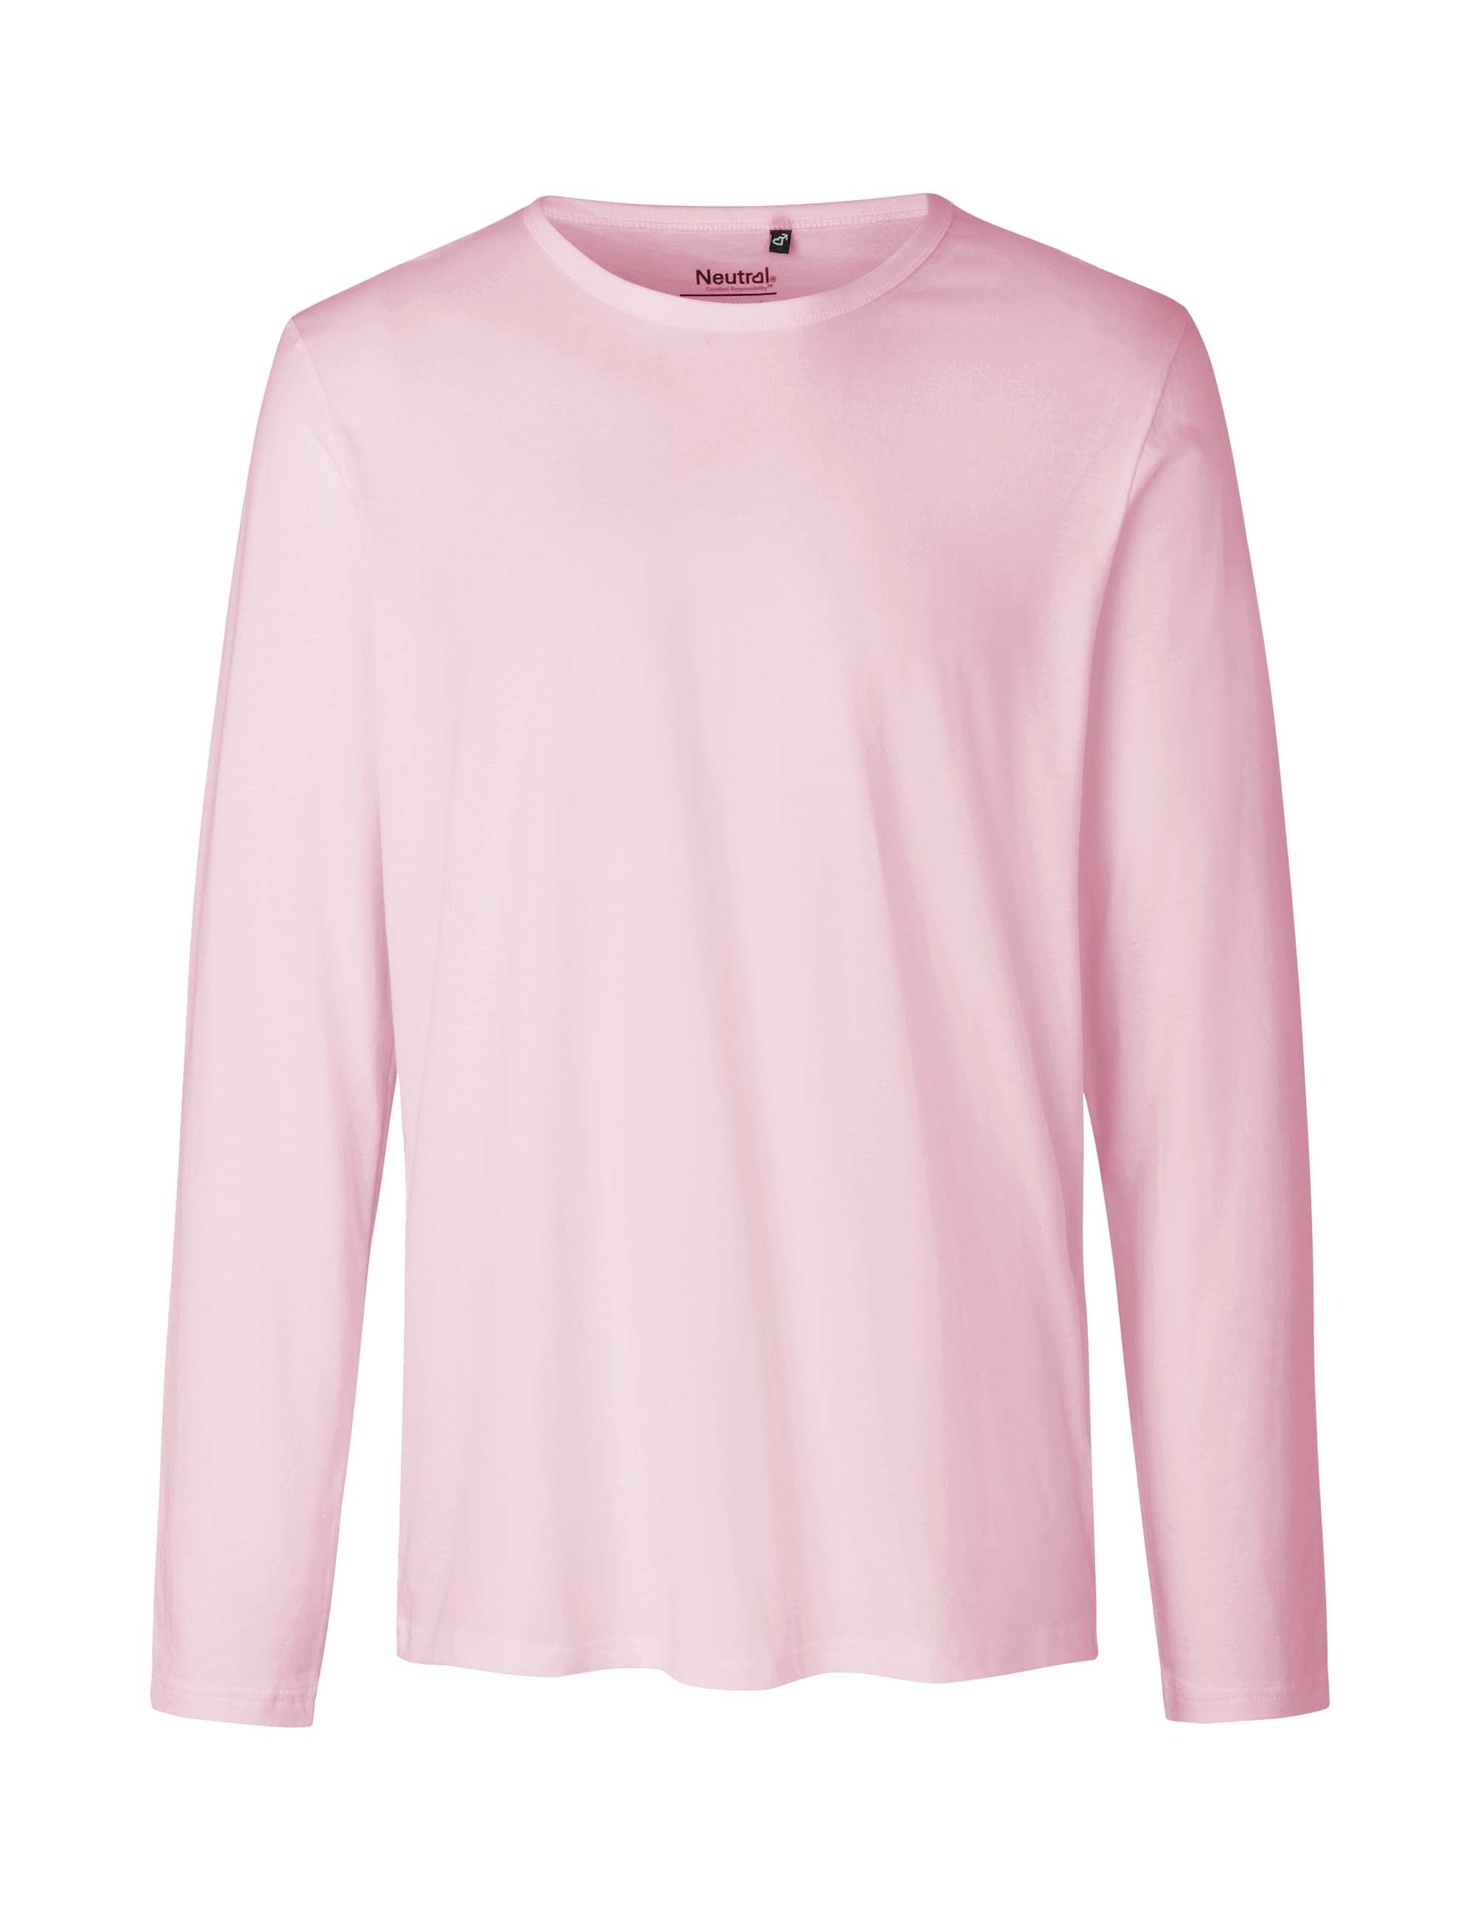 [PR/02392] Mens Long Sleeve T-Shirt (Light Pink 20, S)